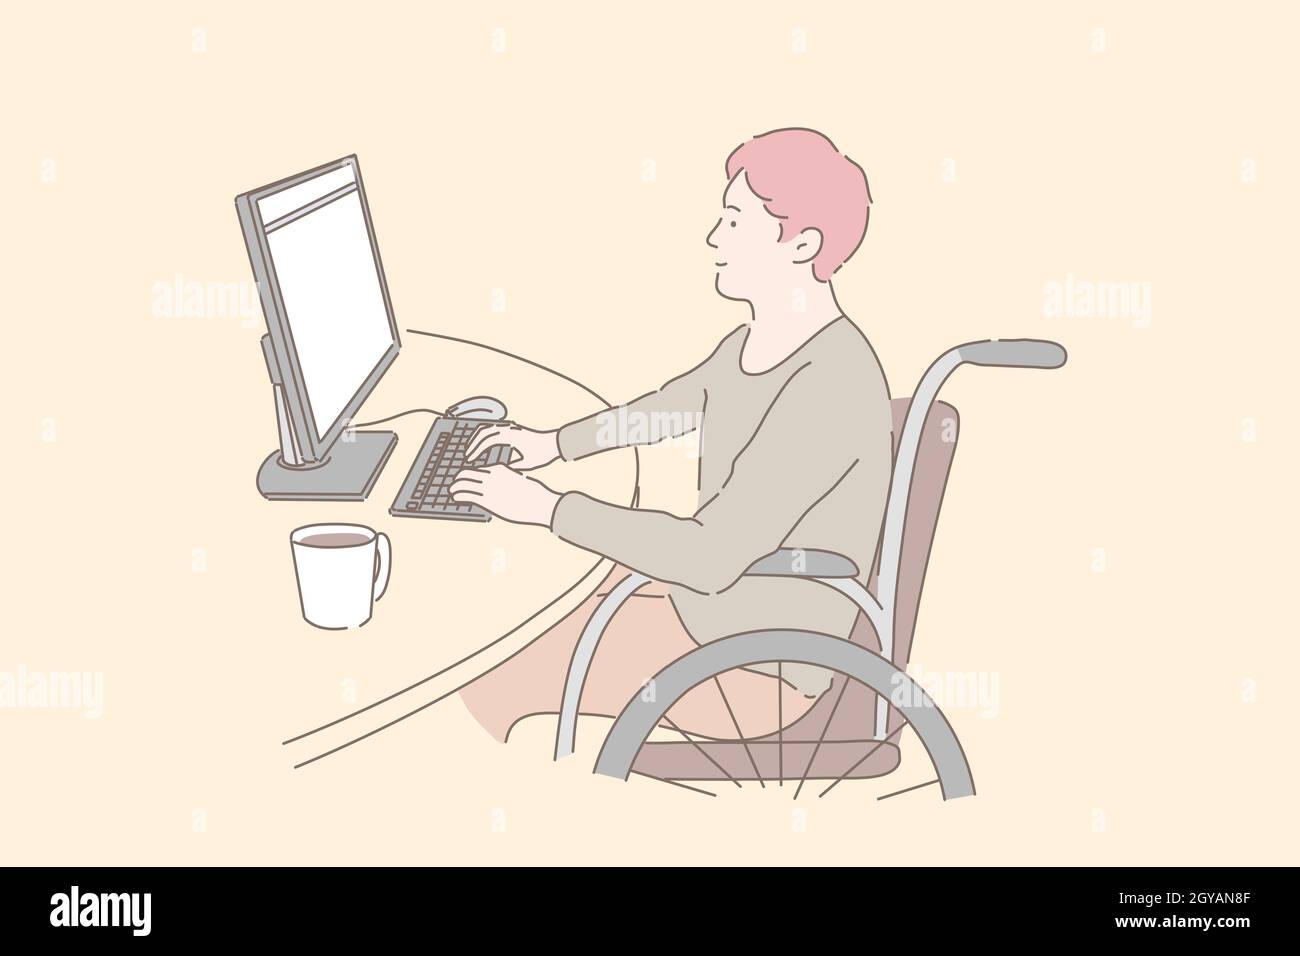 Concept de personne handicapée au travail. Jeune homme en fauteuil roulant travaillant avec PC, inclusion sociale des personnes handicapées, programmateurs indépendants paraplégiques Banque D'Images